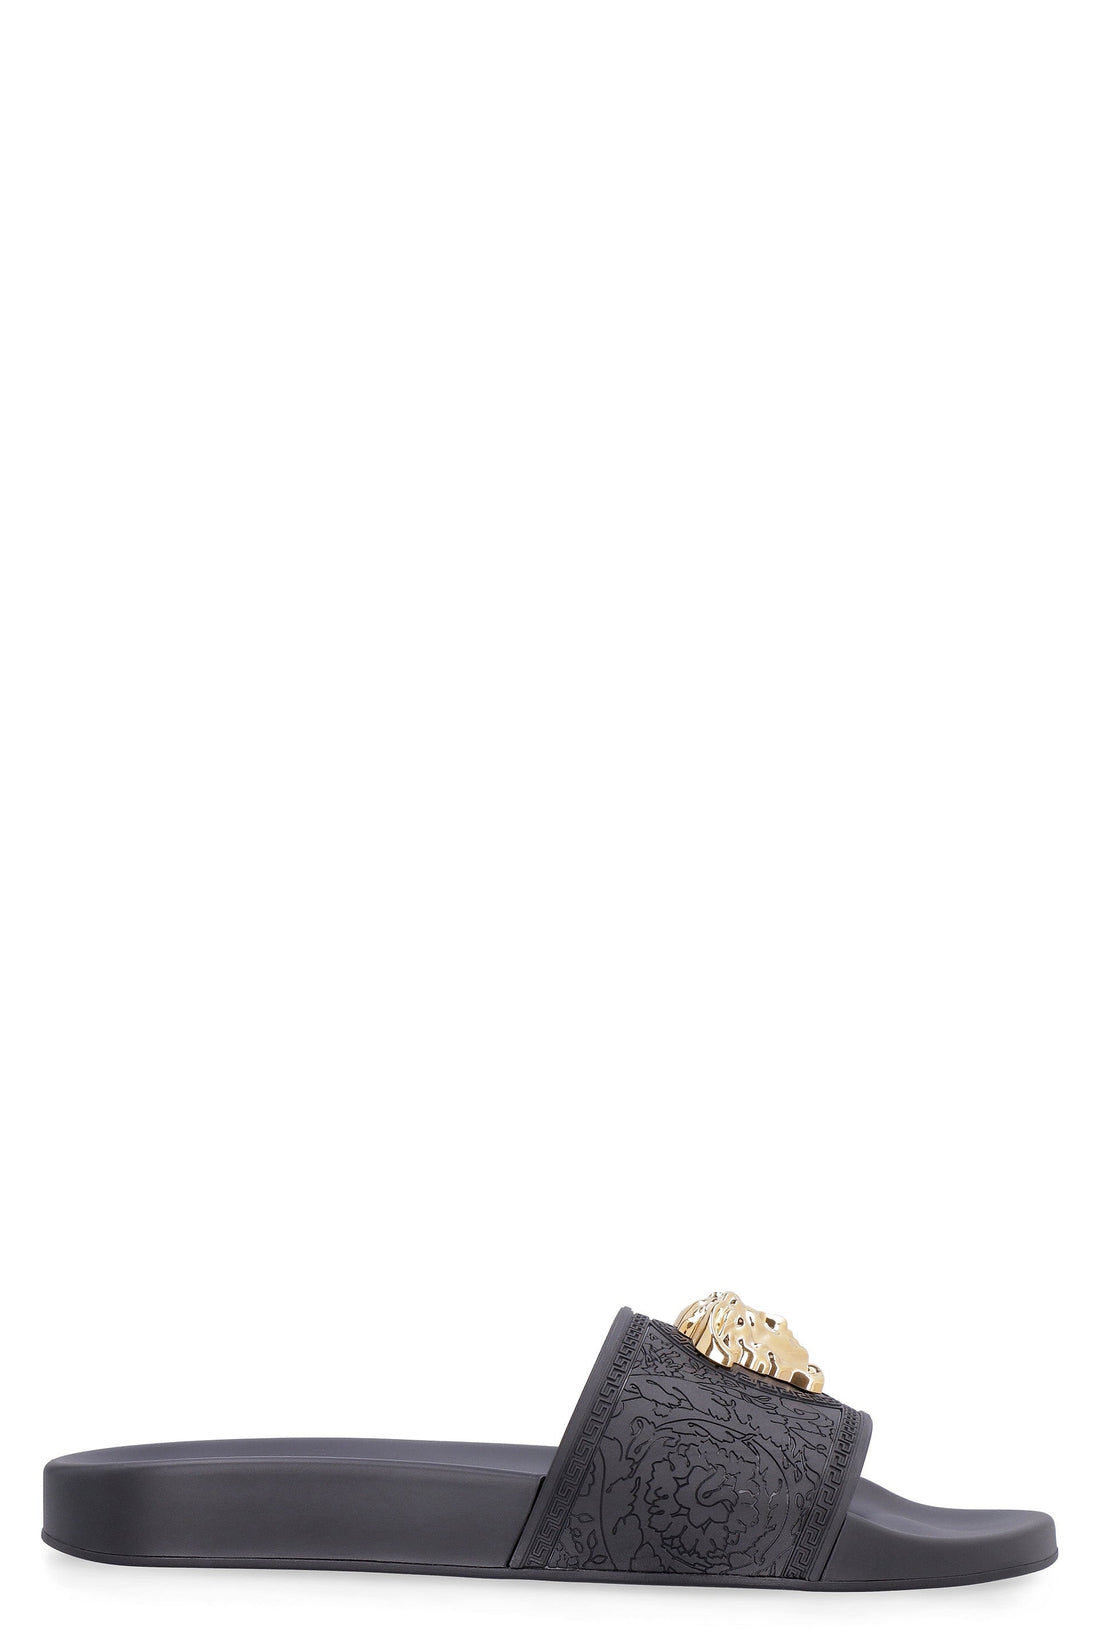 Versace-OUTLET-SALE-Palazzo logo detail rubber slides-ARCHIVIST